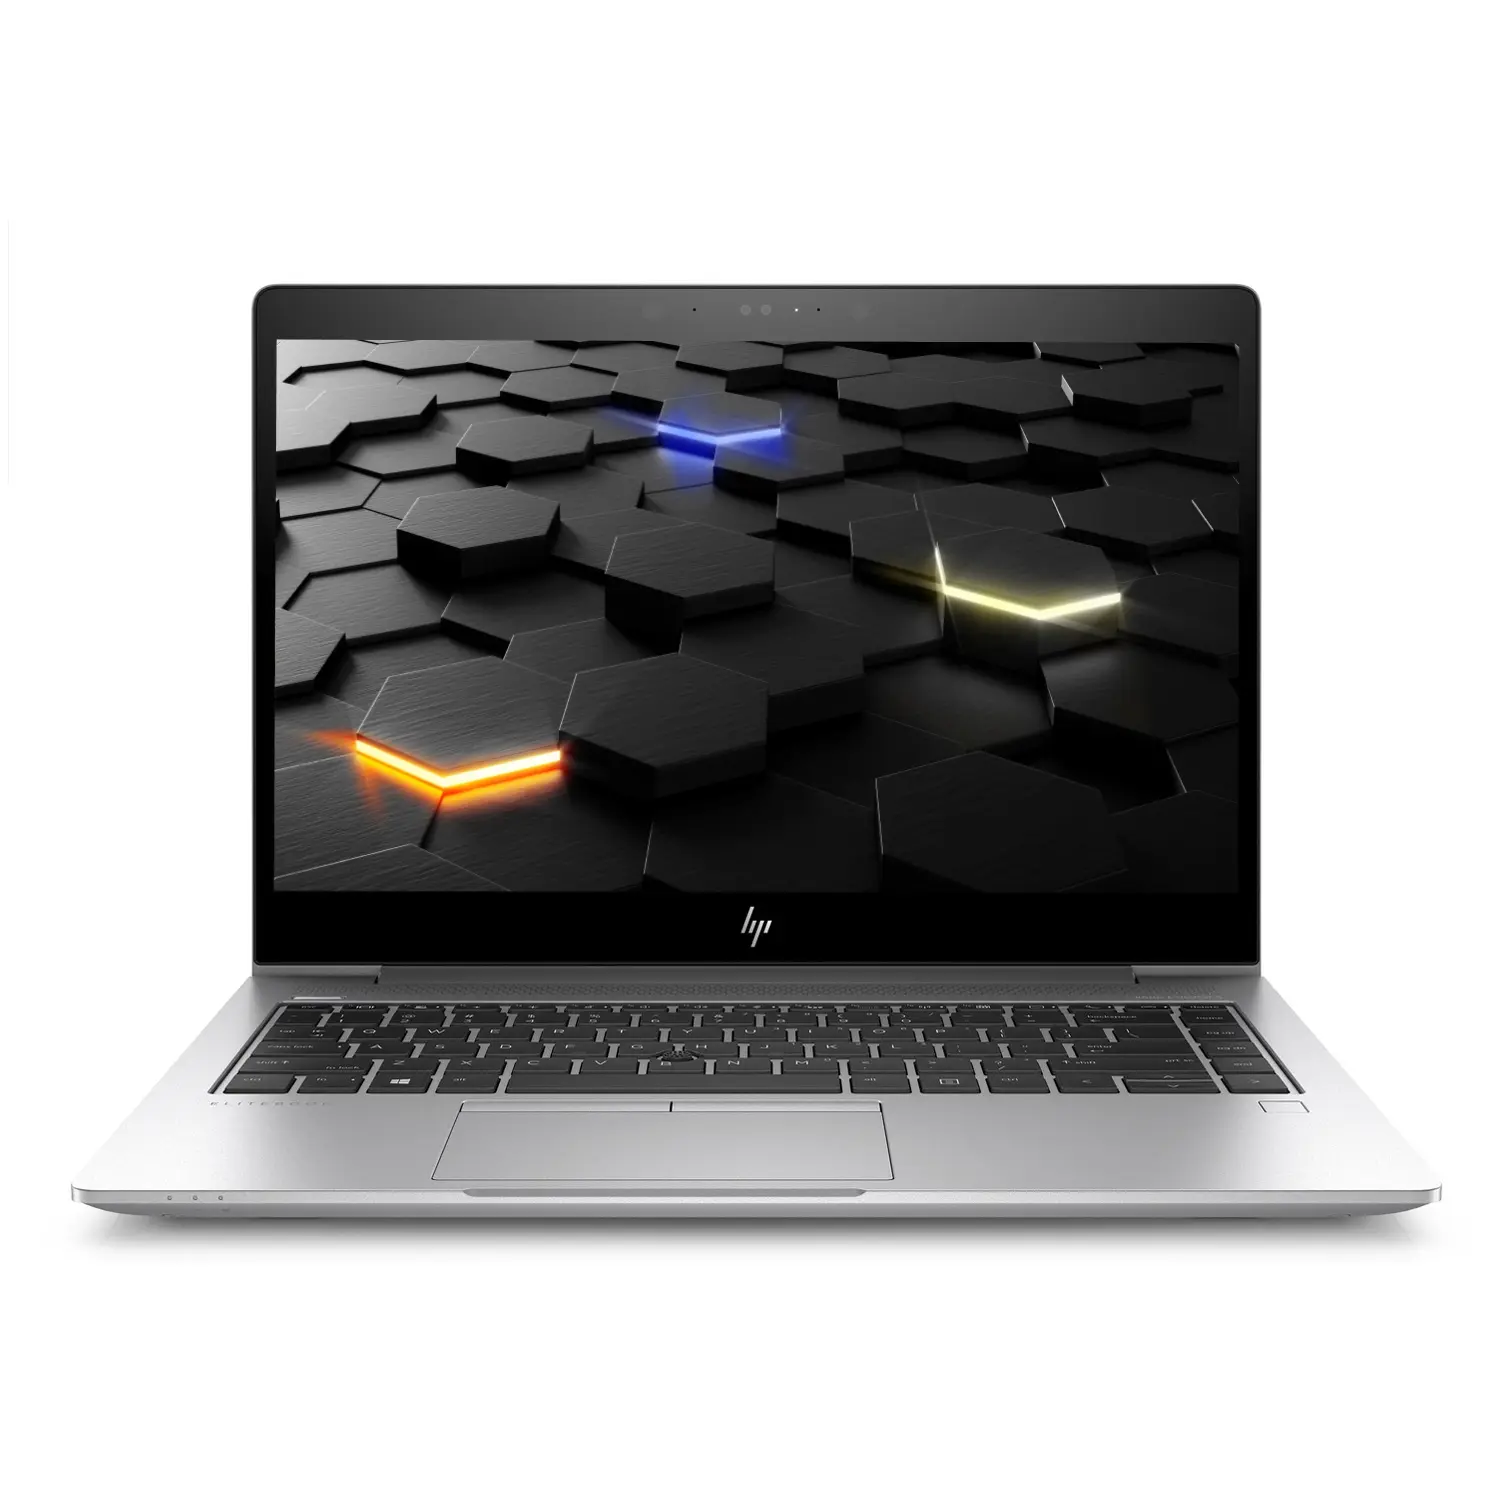 HP EliteBook 840 G6 i5 (8.Gen) FHD IPS, 32GB, 1TB NVMe, mit LTE,  beleuchtete Tastatur, Webcam, Windows 10 Pro